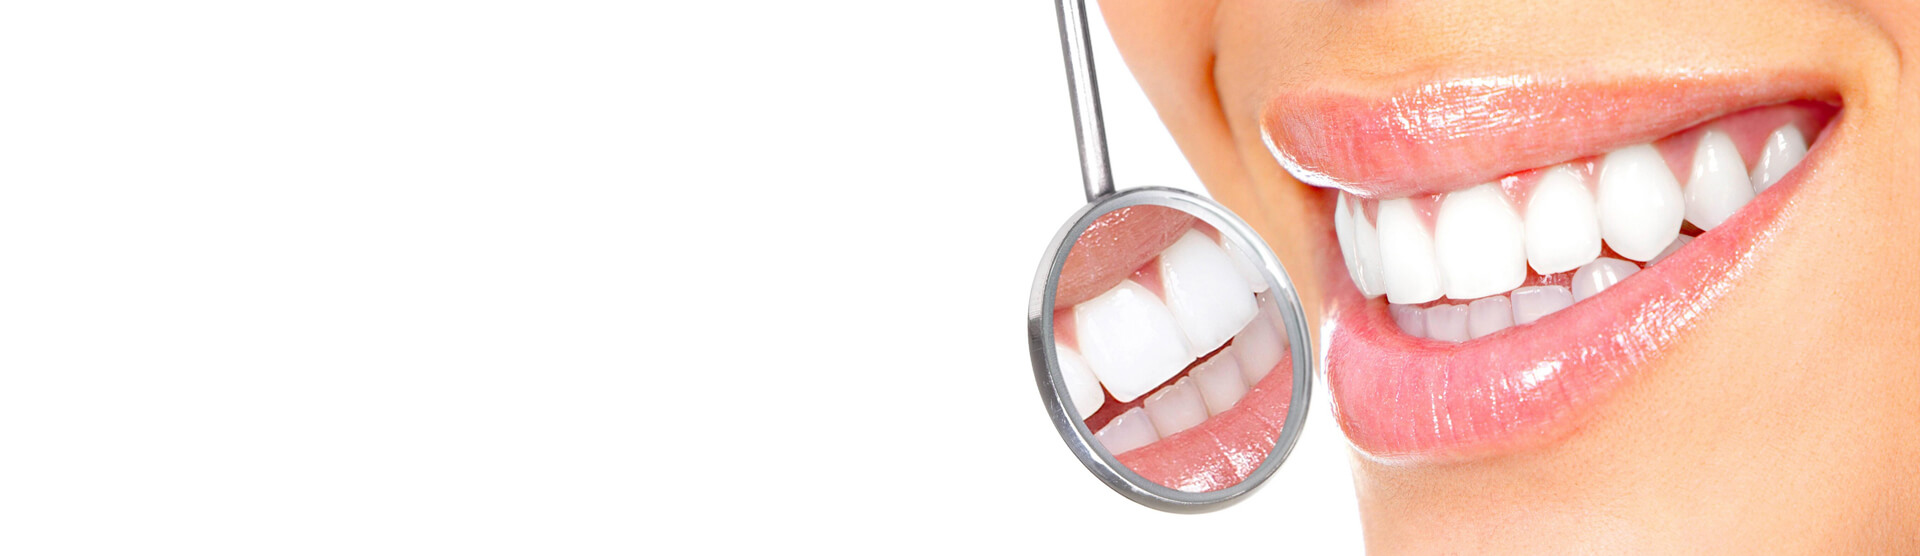 Гигиена полости рта цена акция. Отбеливание зубов. Профессиональная гигиена полости рта. Зуб без фона.